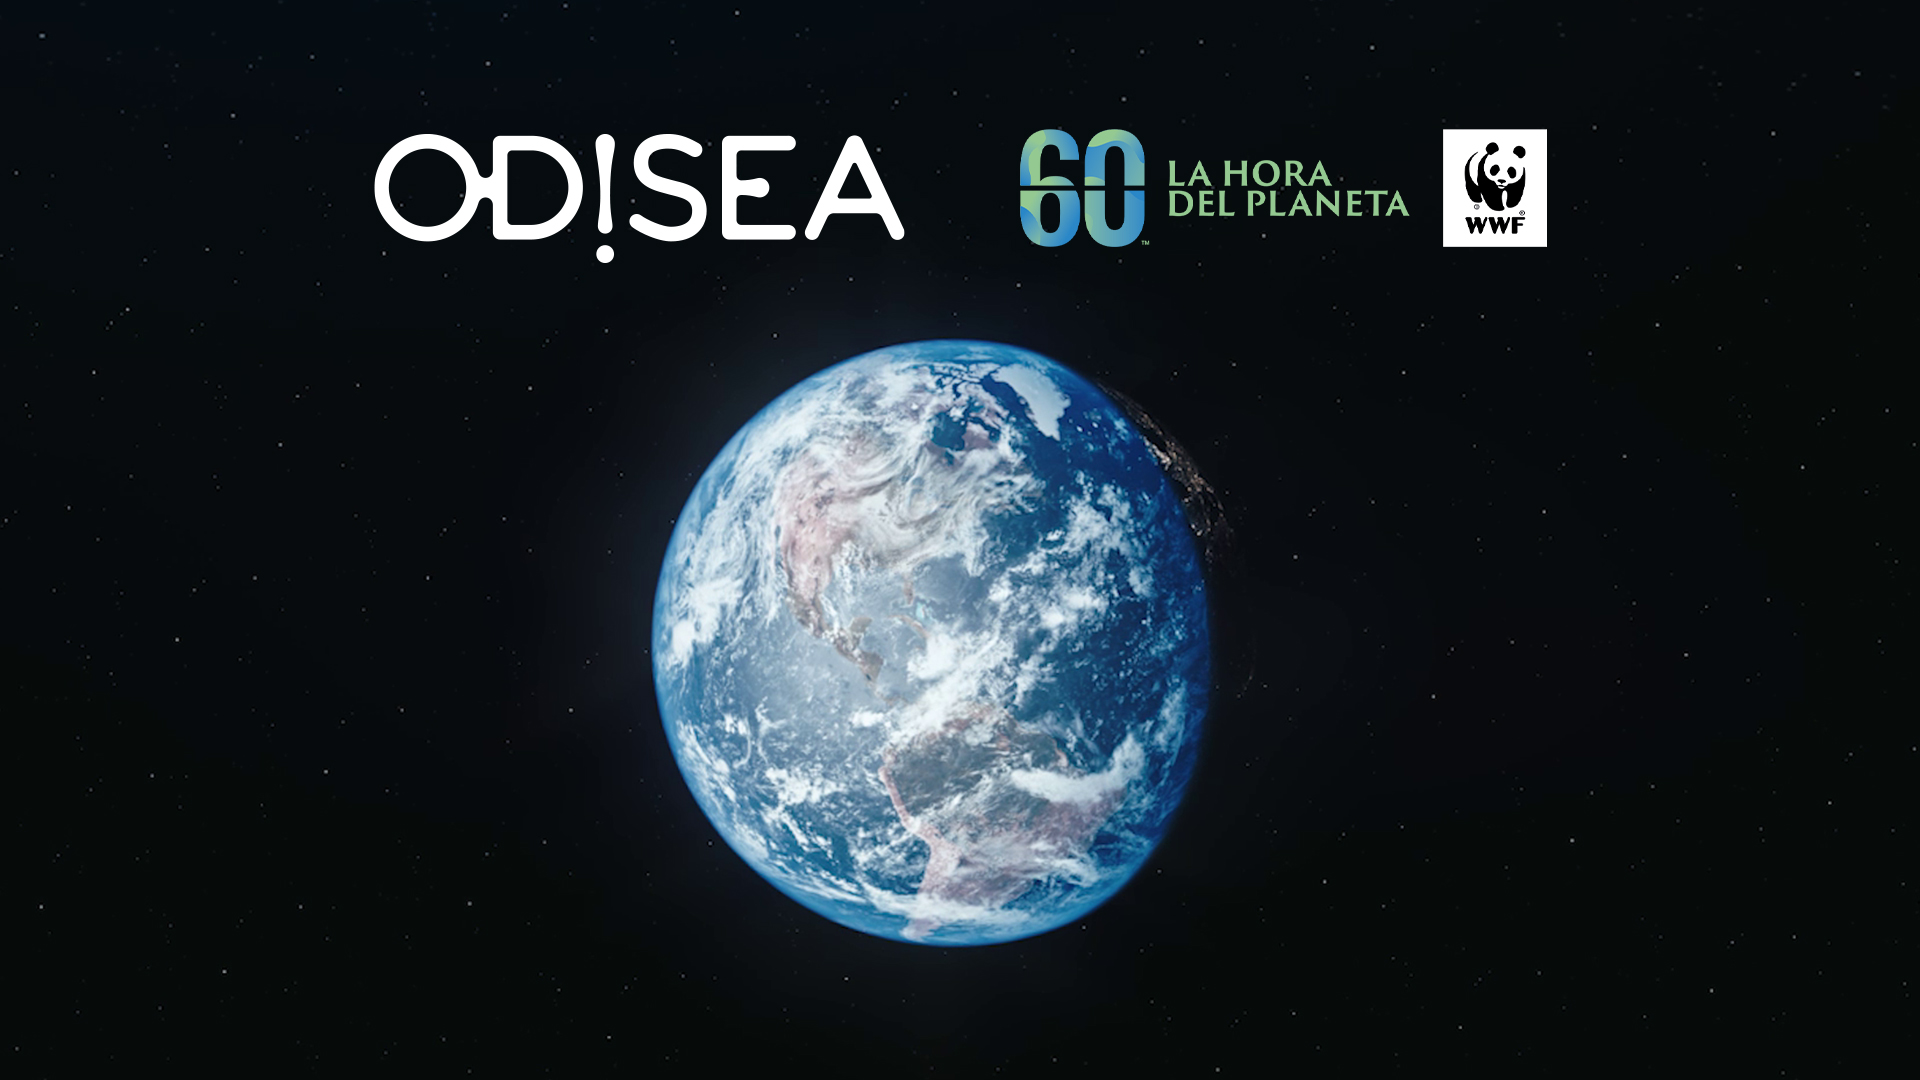 El canal de televisión Odisea se une a WWF para impulsar La Hora del Planeta